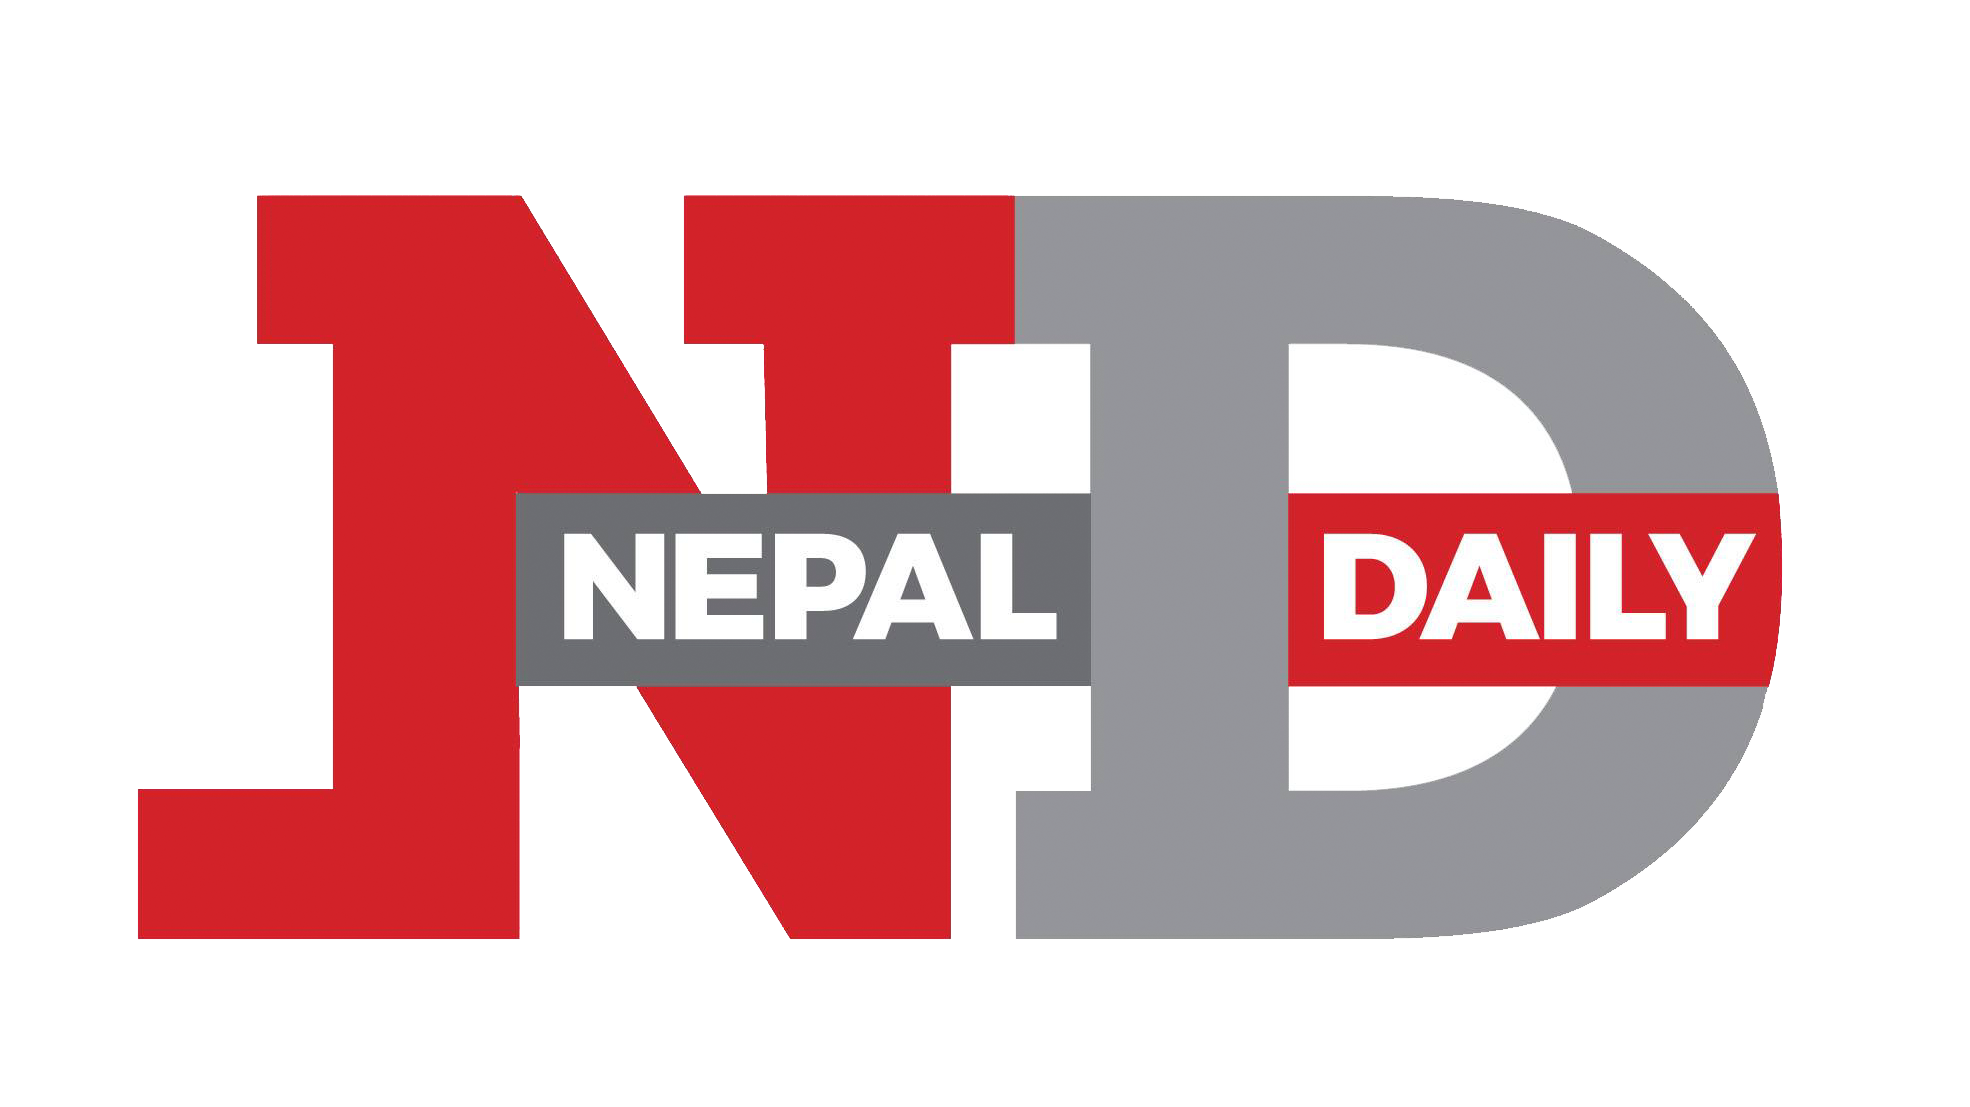 Nepal Daily